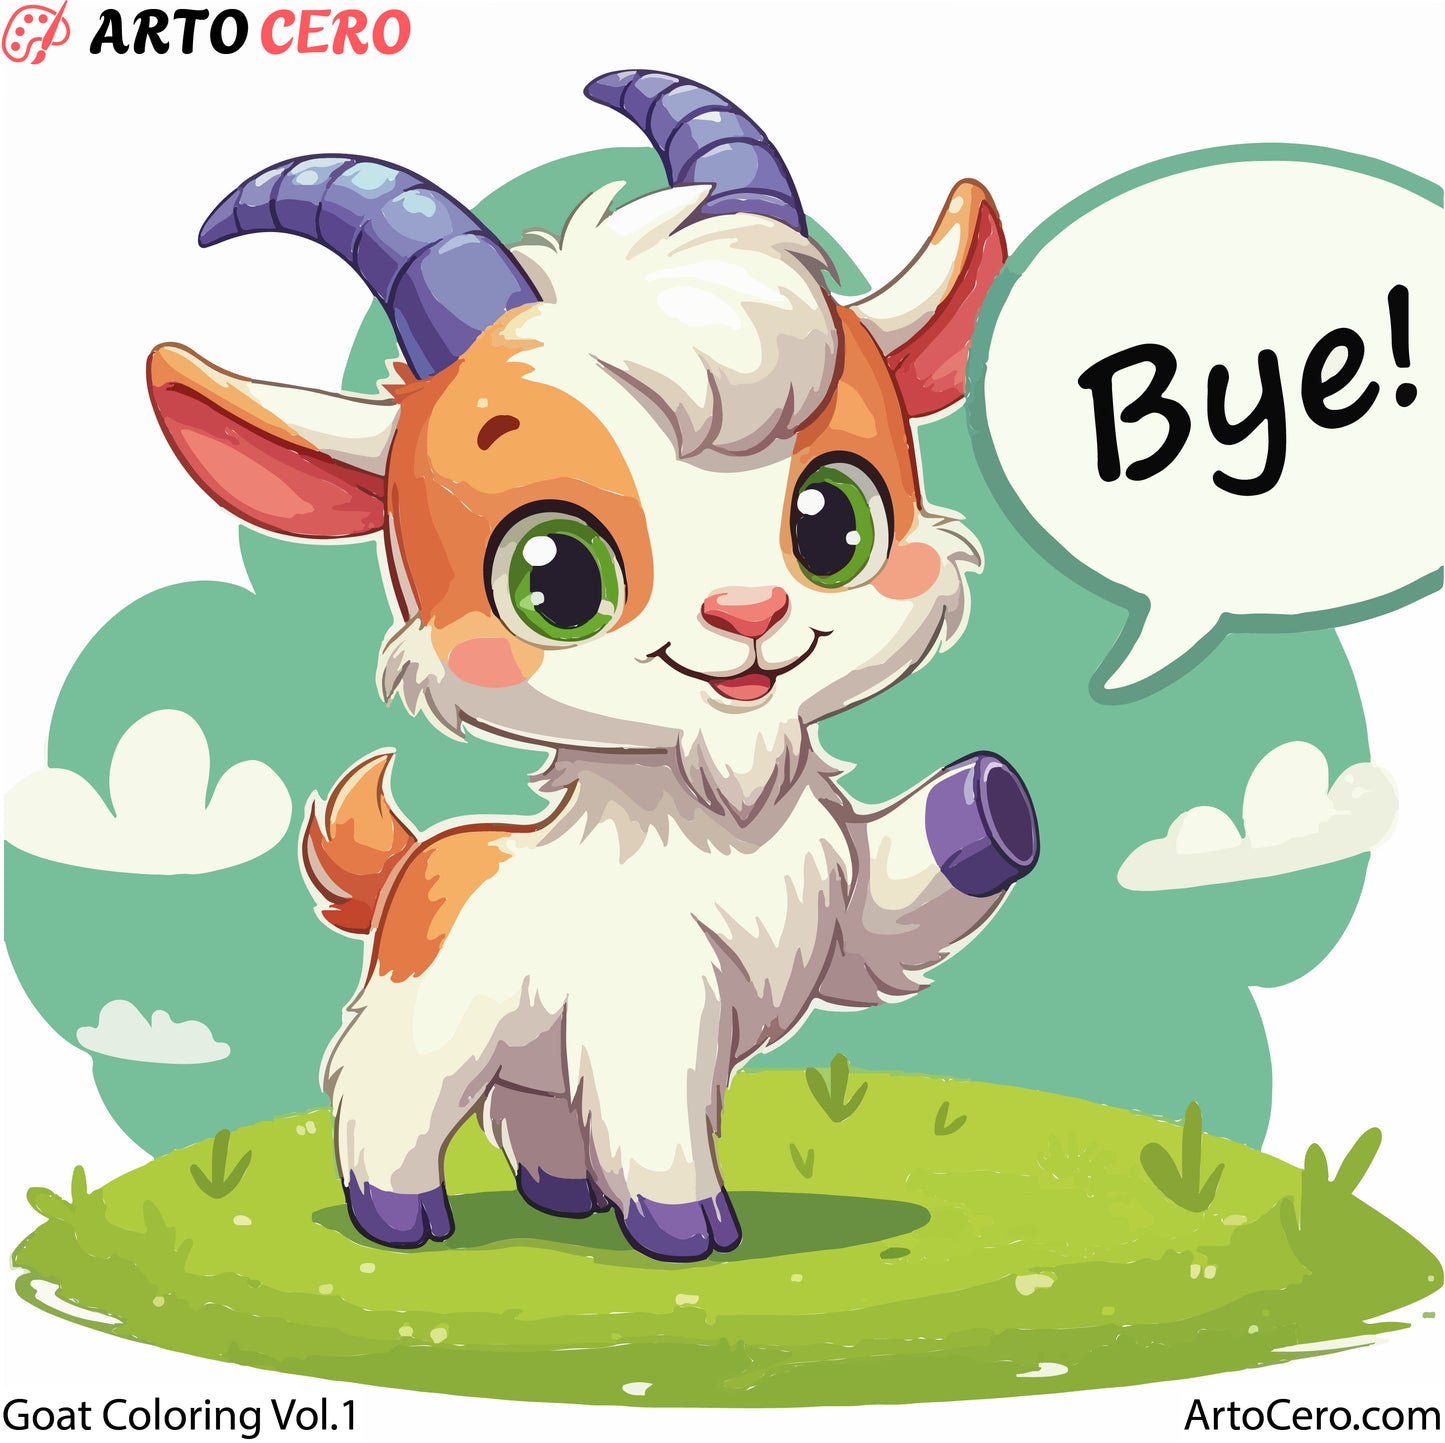 Goat Coloring Digital Book Vol.1 - ArtoCero.com